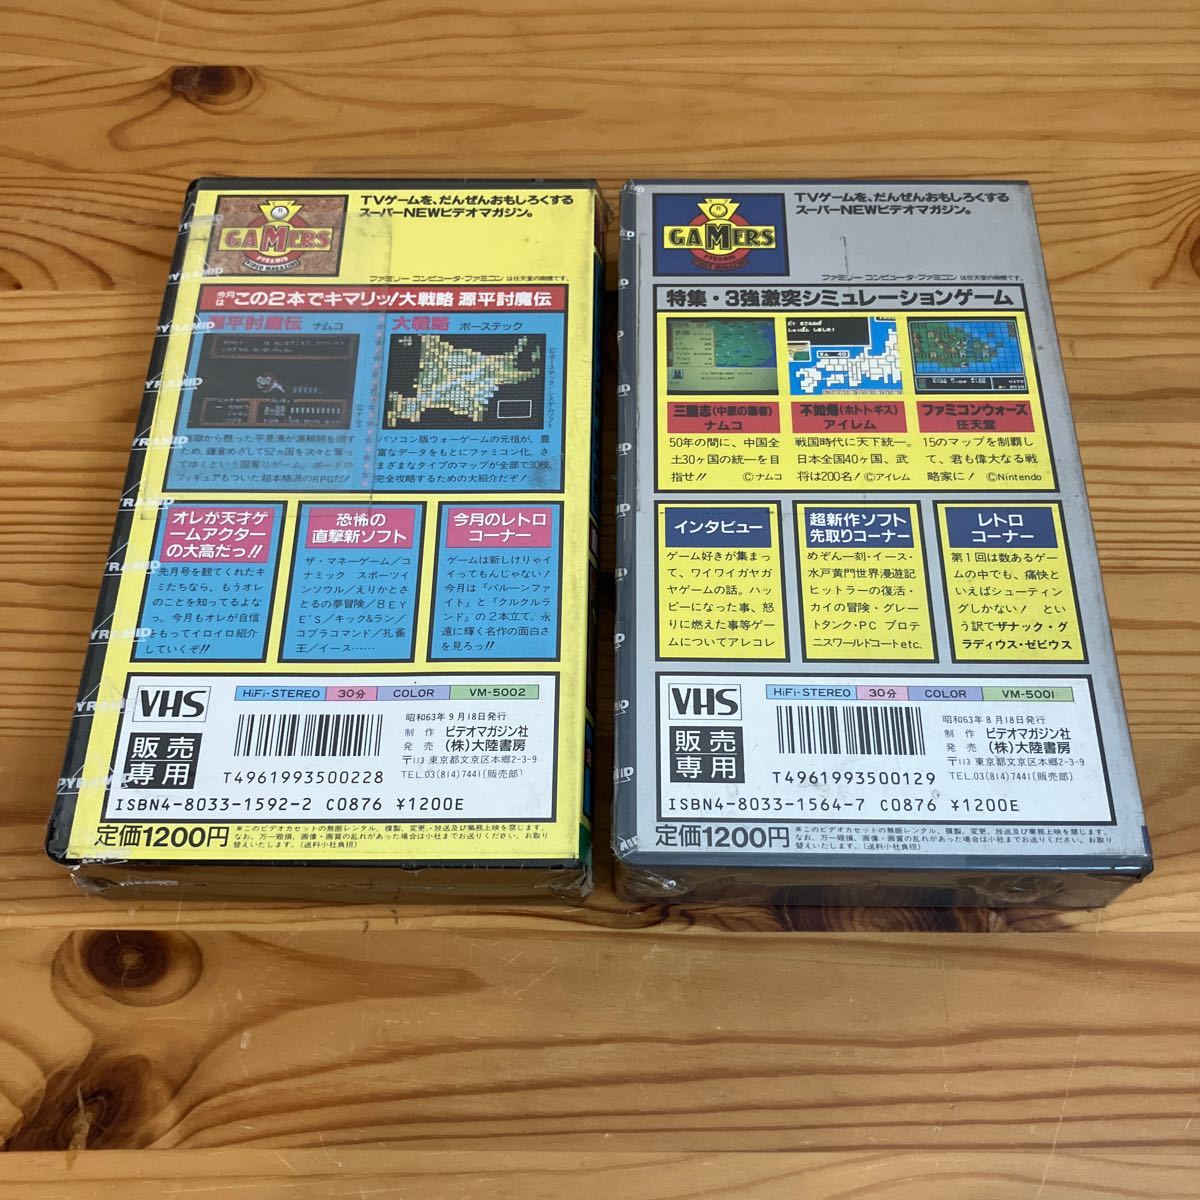 GAMERS.. номер,..2 номер комплект большой суша книжный магазин три .. Namco не .. irem Famicom War z nintendo источник flat ... Namco большой стратегия Poe s Tec VHS